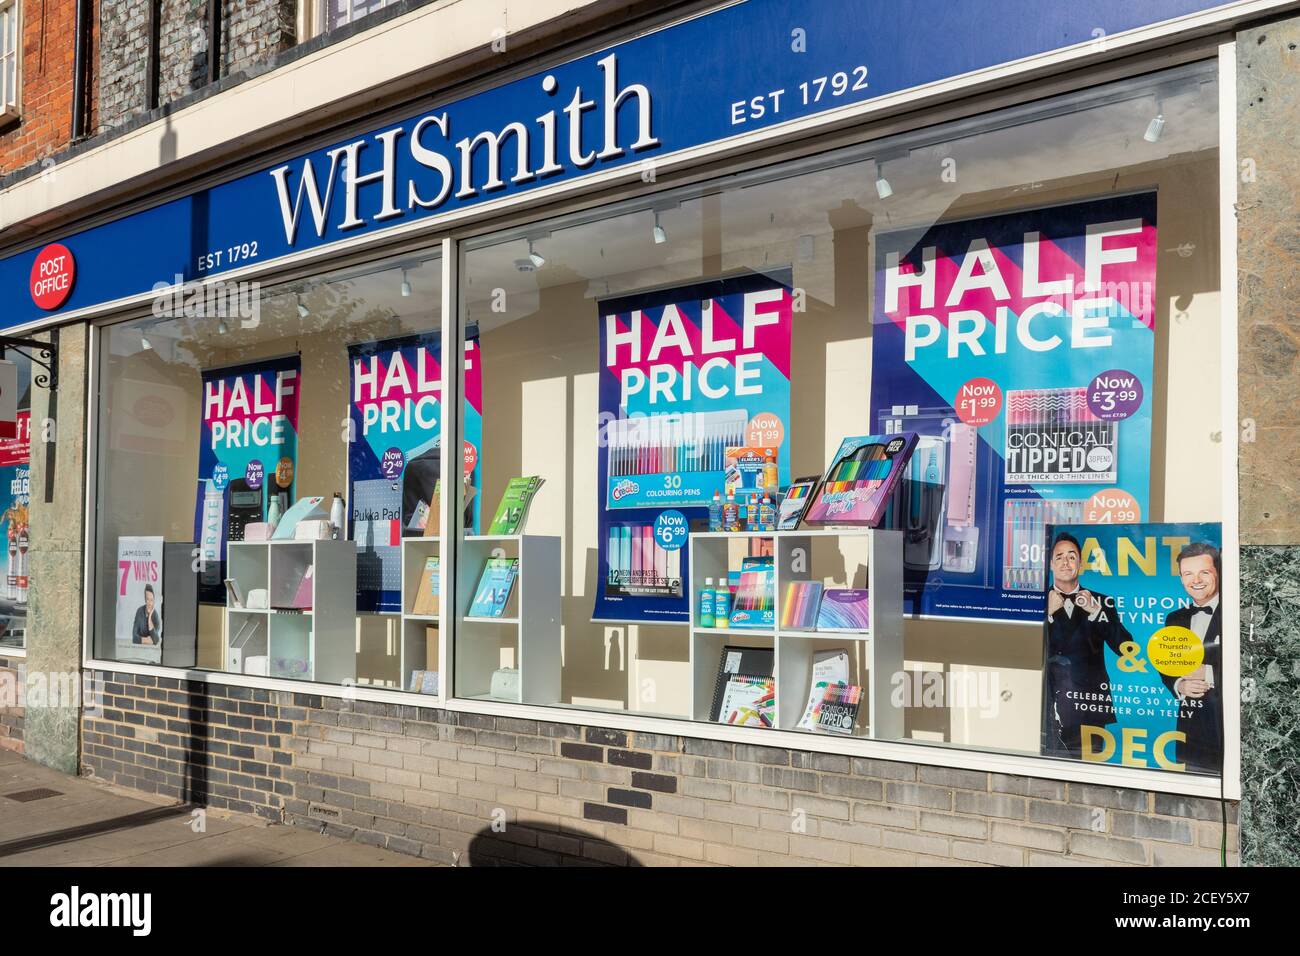 High Street sucursal de WH Smith con anuncios de venta a mitad de precio en las ventanas de la tienda. WH Smith anunció recientemente cierres y despidos posteriores al cierre Foto de stock